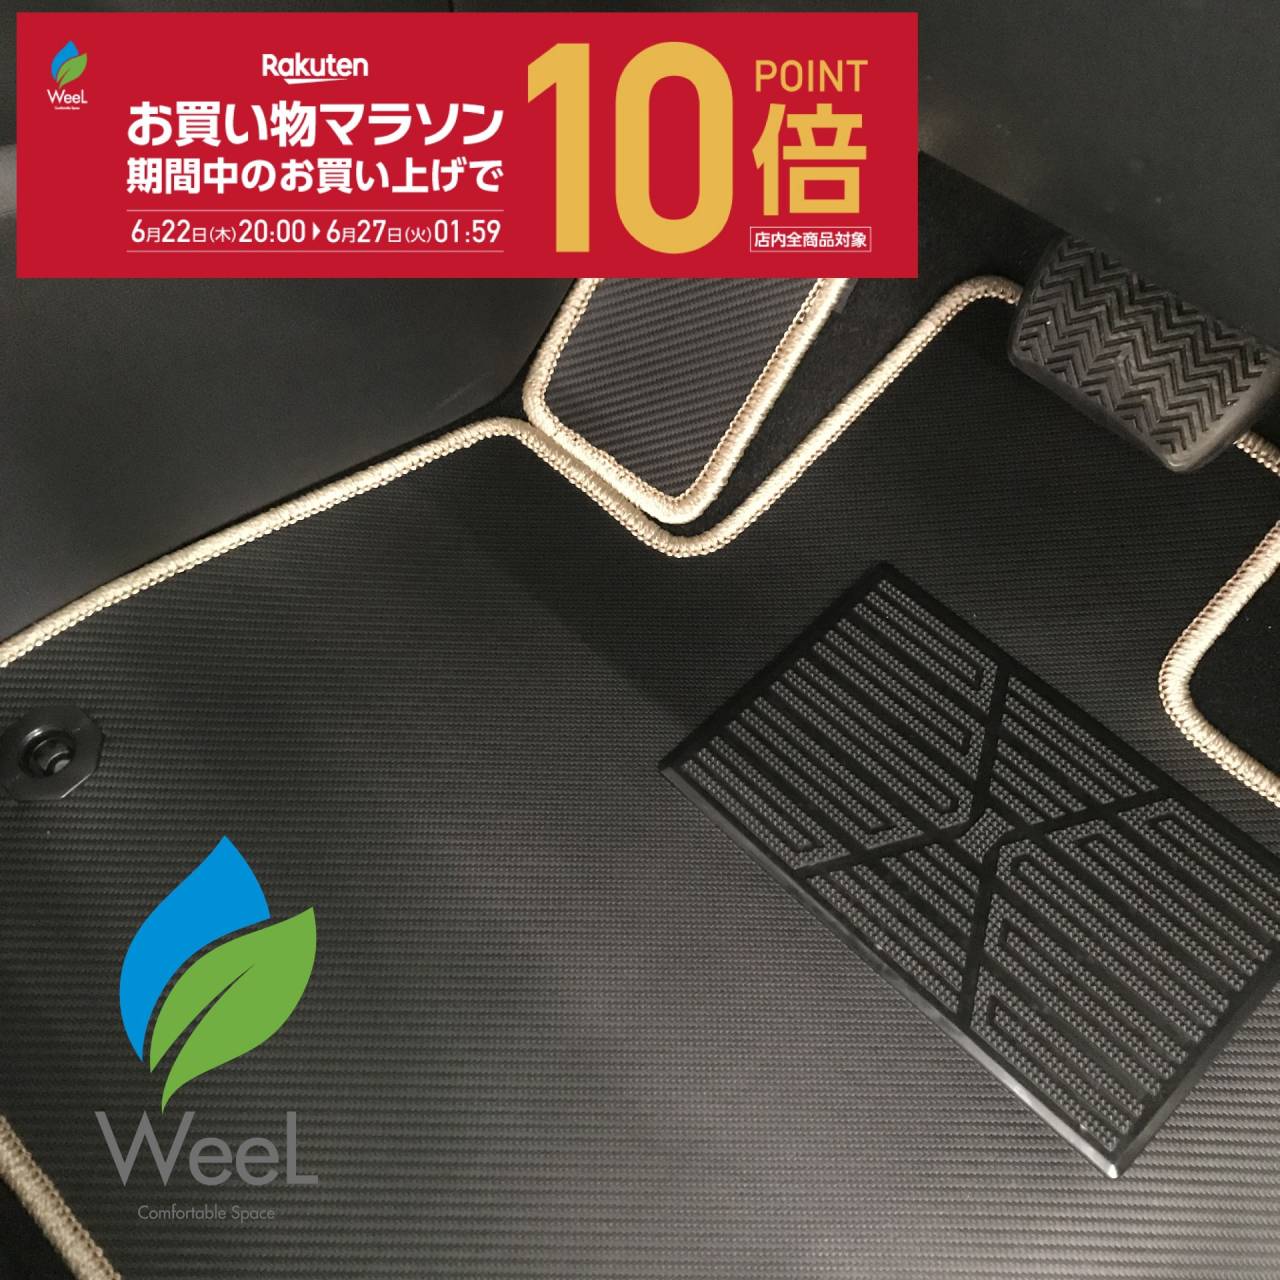 和歌山のフロアマット専門店WeeLです‼今月の売れ筋商品は新型ノアのフルセット🚙✨本日～ポイント10倍✨